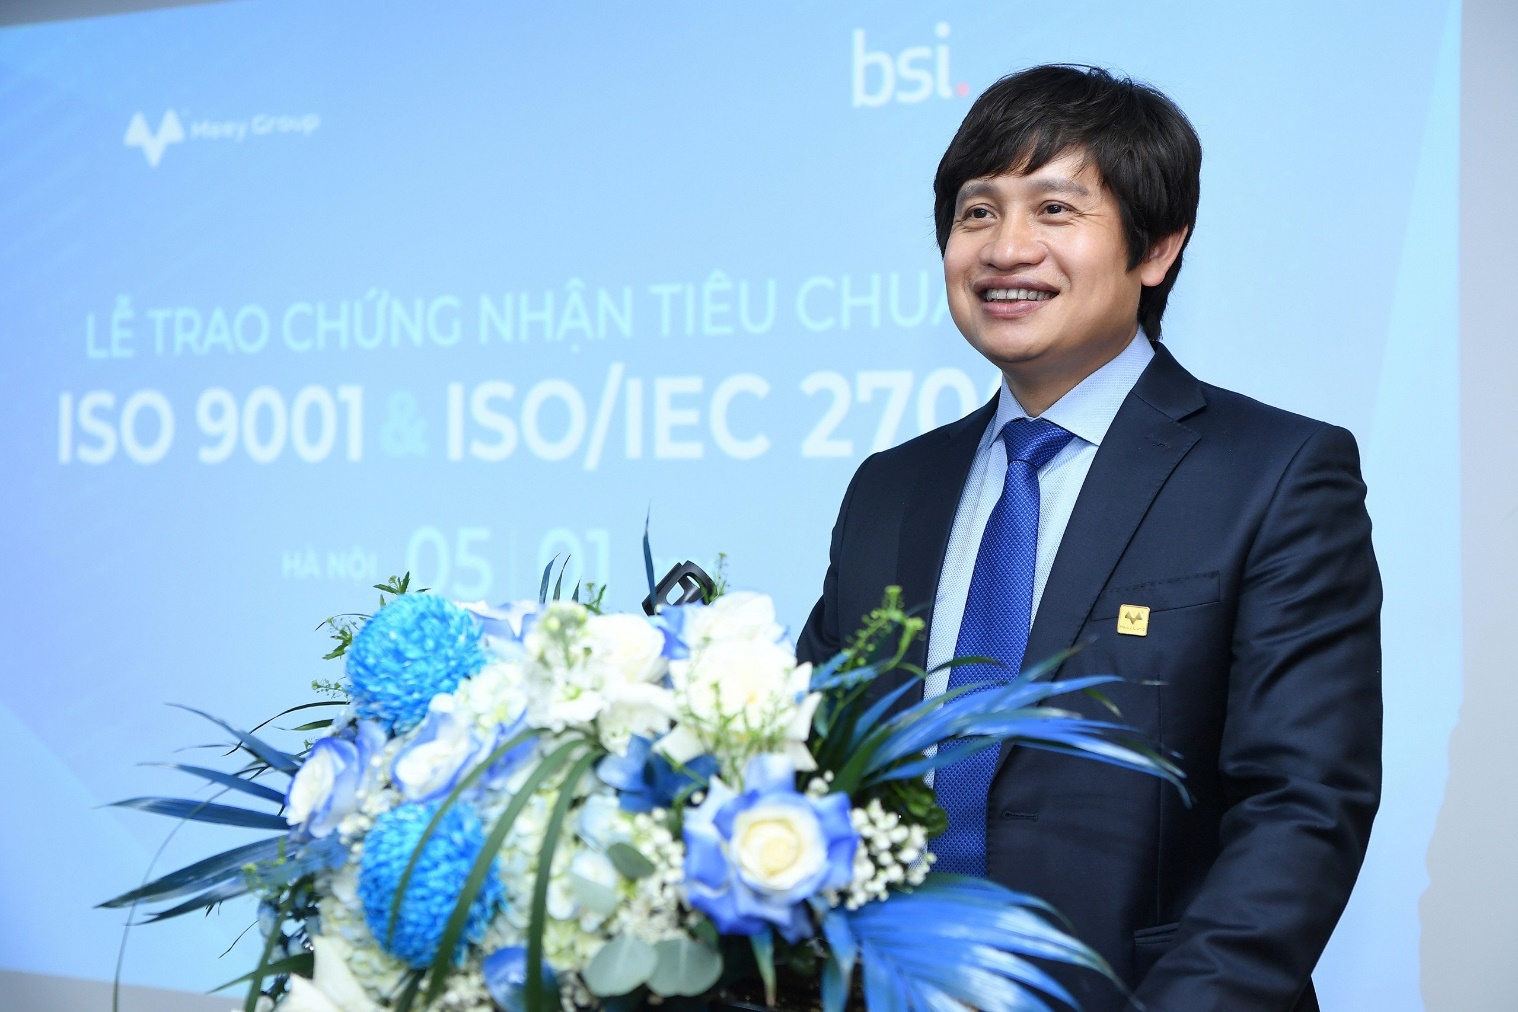 Doanh nghiệp tiên phong chuyển đổi số vừa được BSI trao cùng lúc 2 chứng nhận ISO - 1